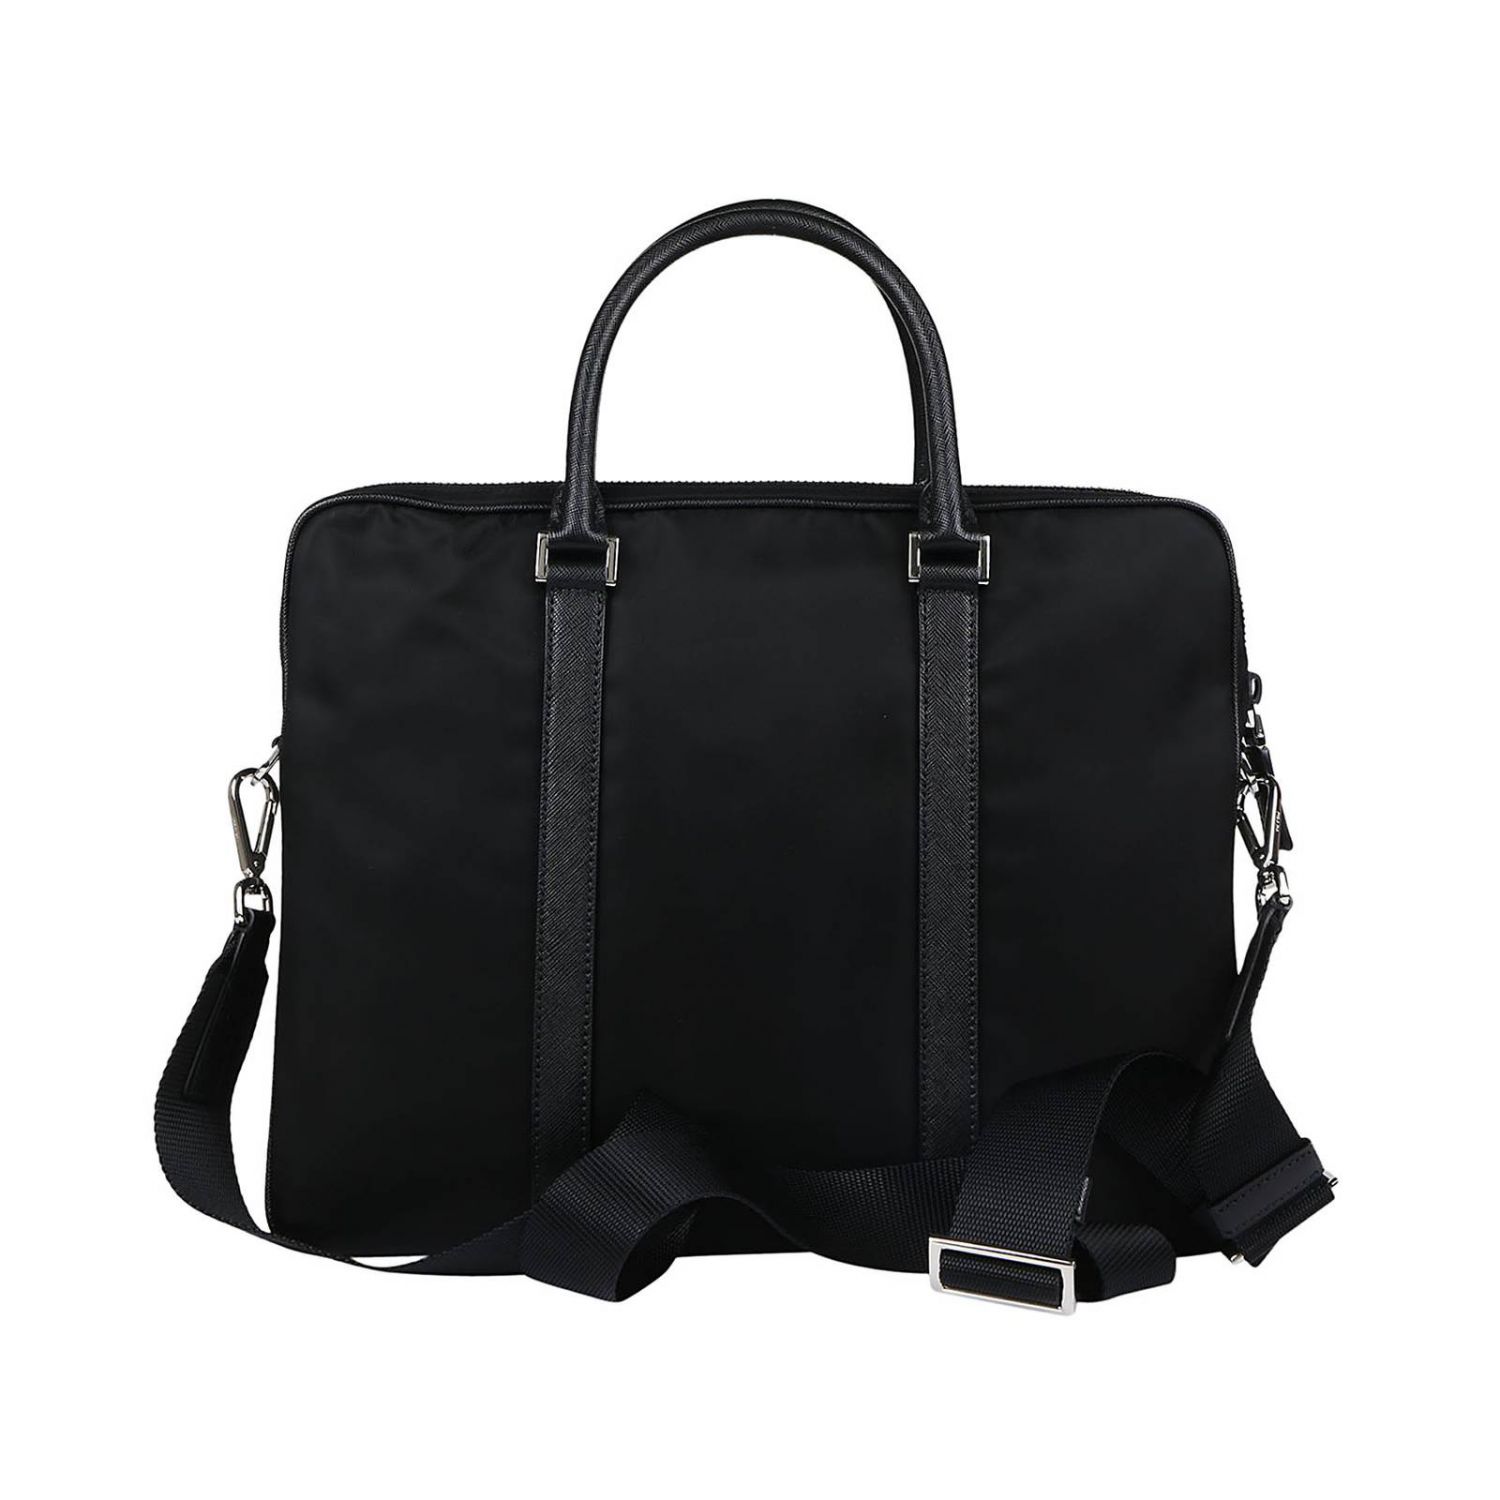 PRADA: Bags men | Bags Prada Men Black | Bags Prada 2VE871 064 GIGLIO.COM